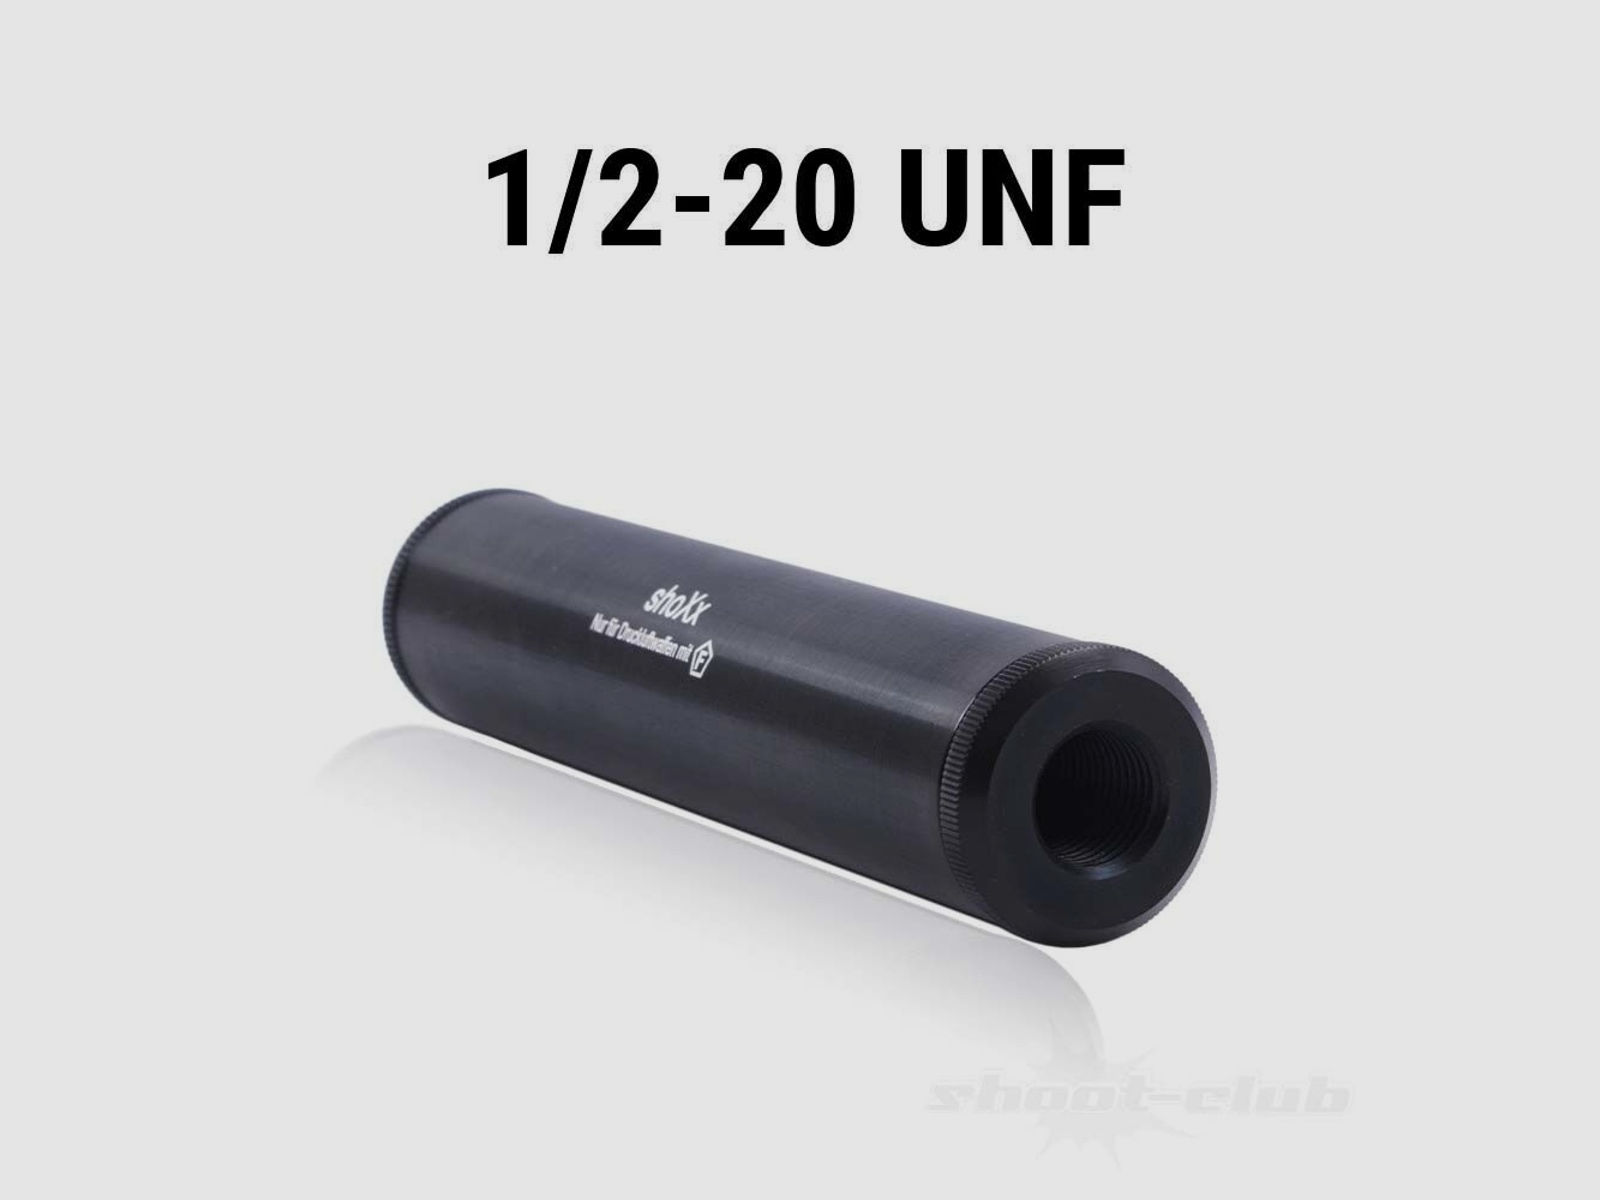 Zoraki HP01 Luftpistole 4,5mm inkl. Schalldämpfer und Adapter